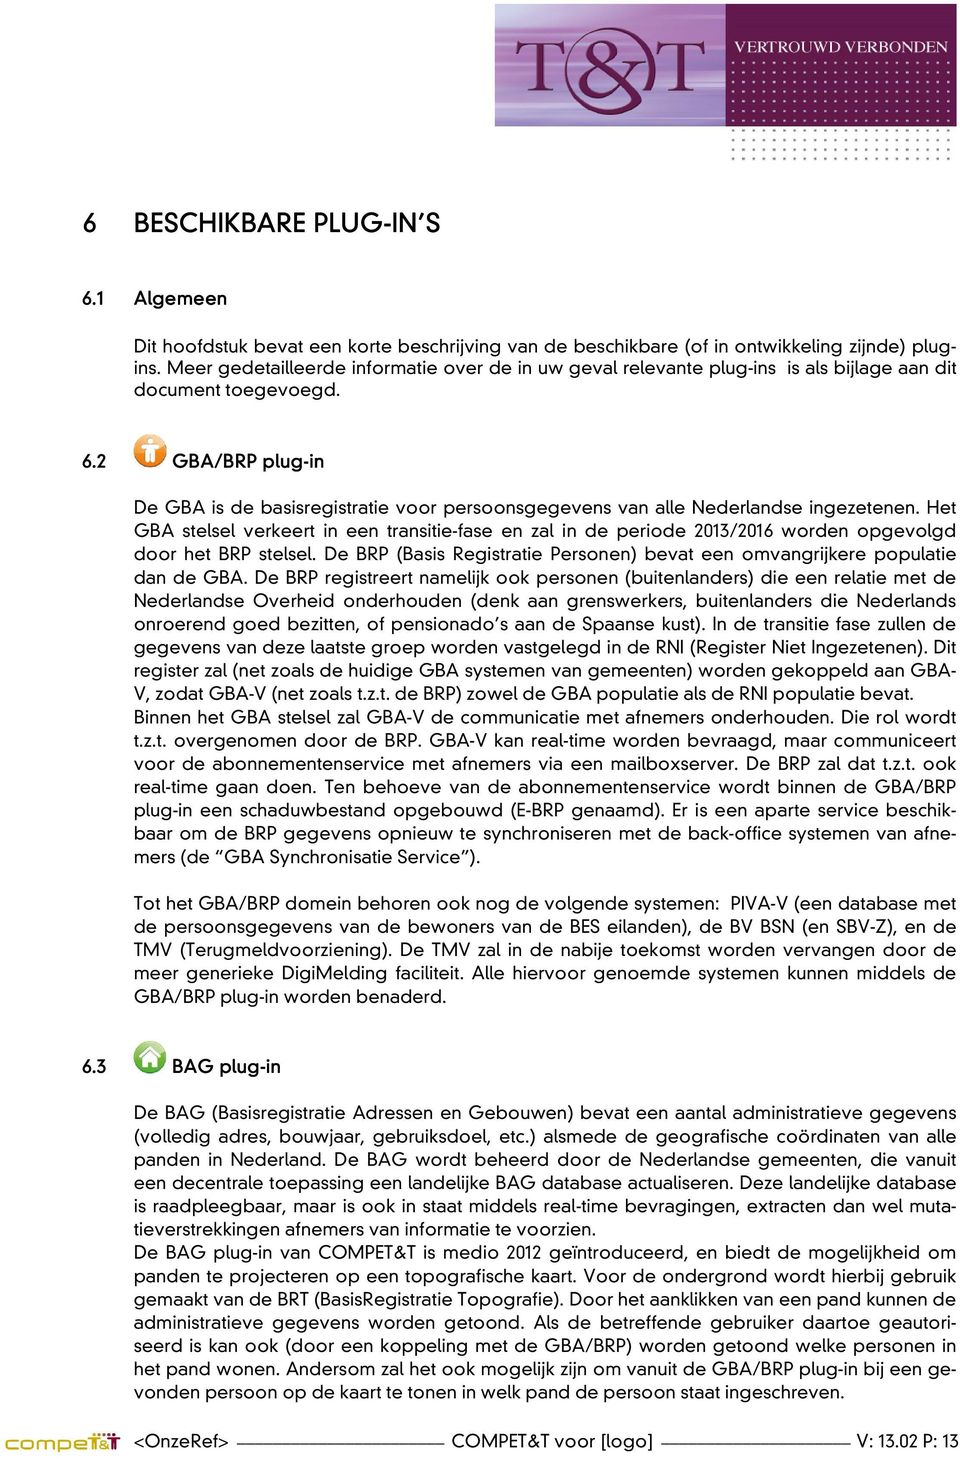 2 GBA/BRP plug-in De GBA is de basisregistratie voor persoonsgegevens van alle Nederlandse ingezetenen.